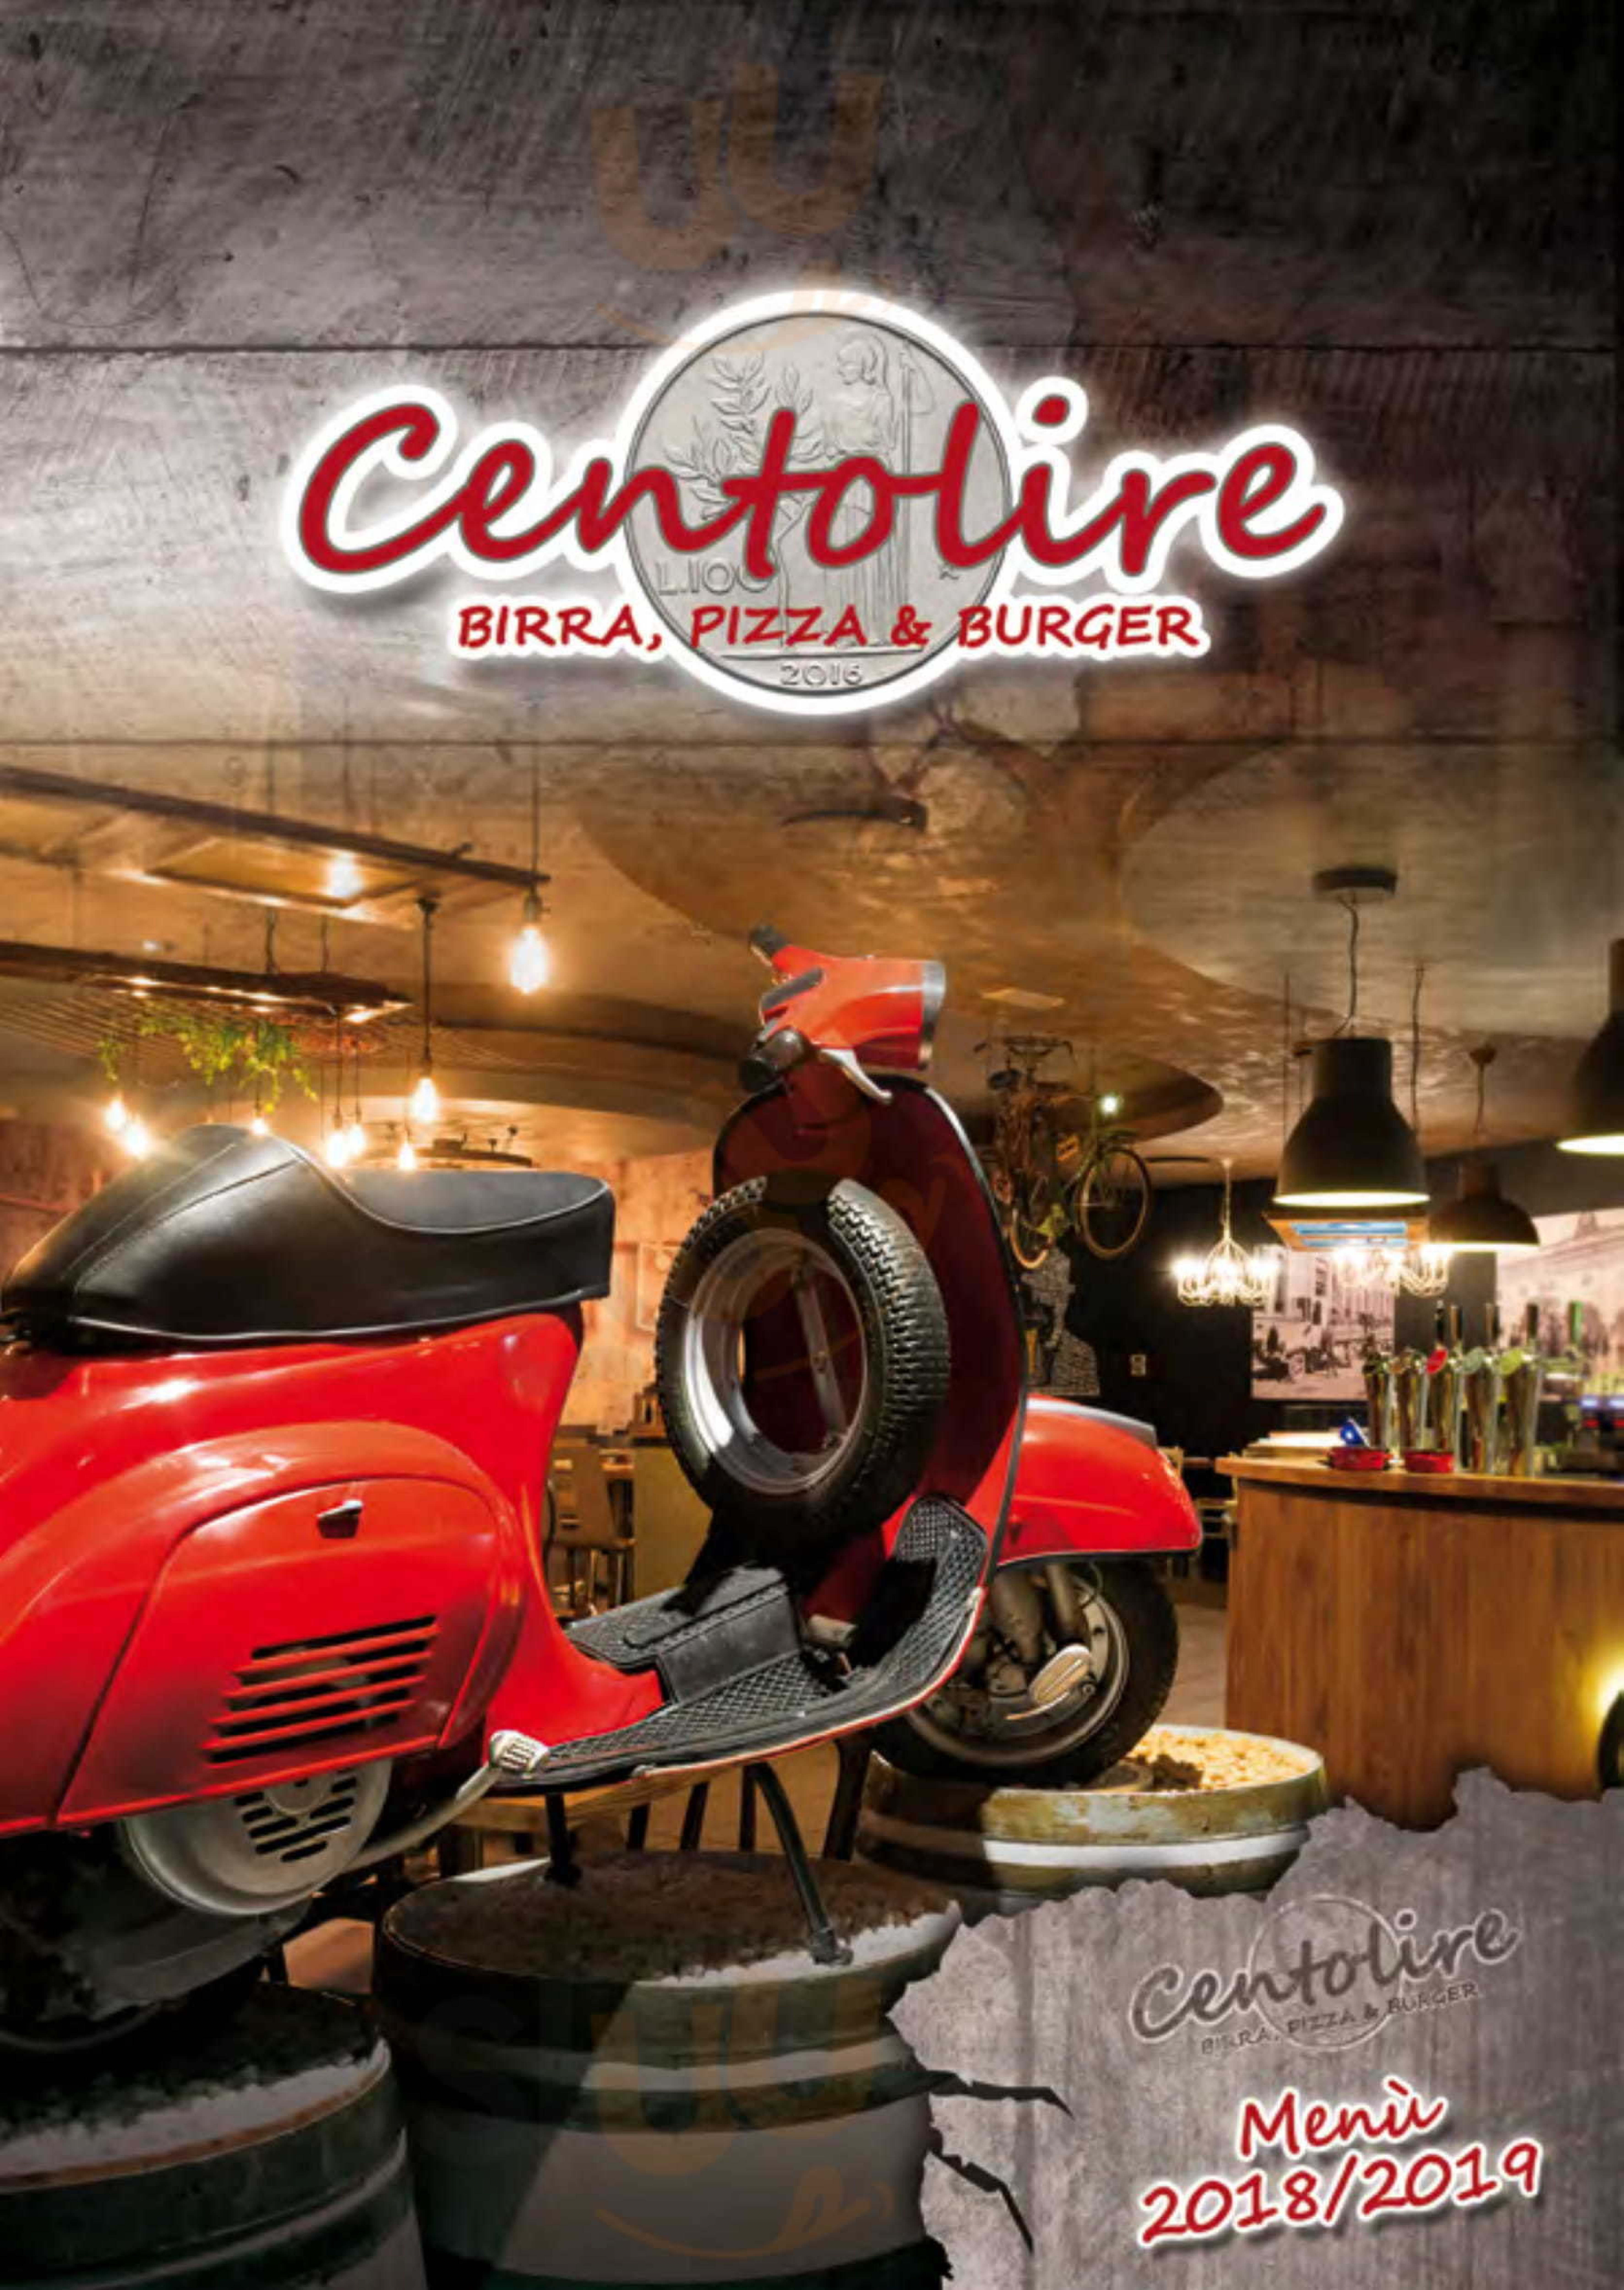 Centolire - Birra, Pizza & Burger Rovigo menù 1 pagina